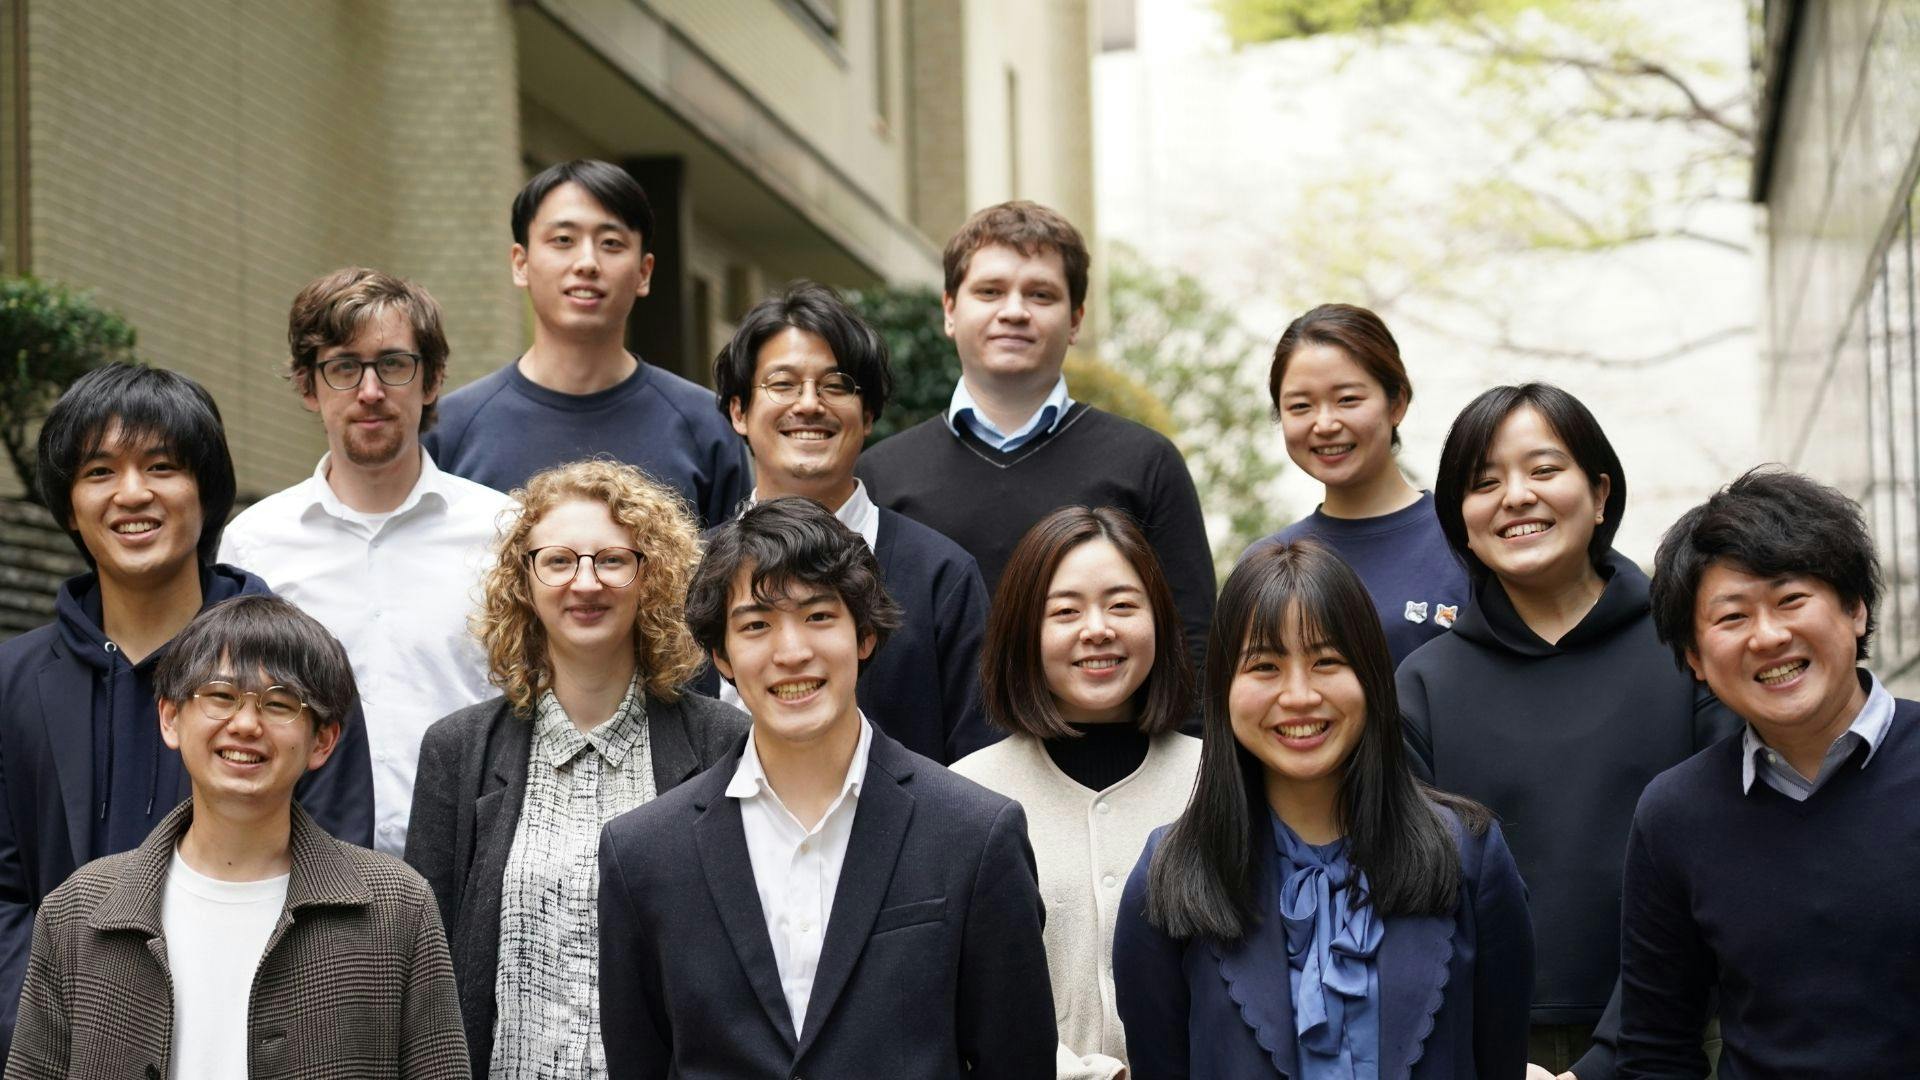 【23卒本選考エントリー】「外国人と日本人の境界線をなくす」をミッションに掲げる急成長中グローバルベンチャー募集